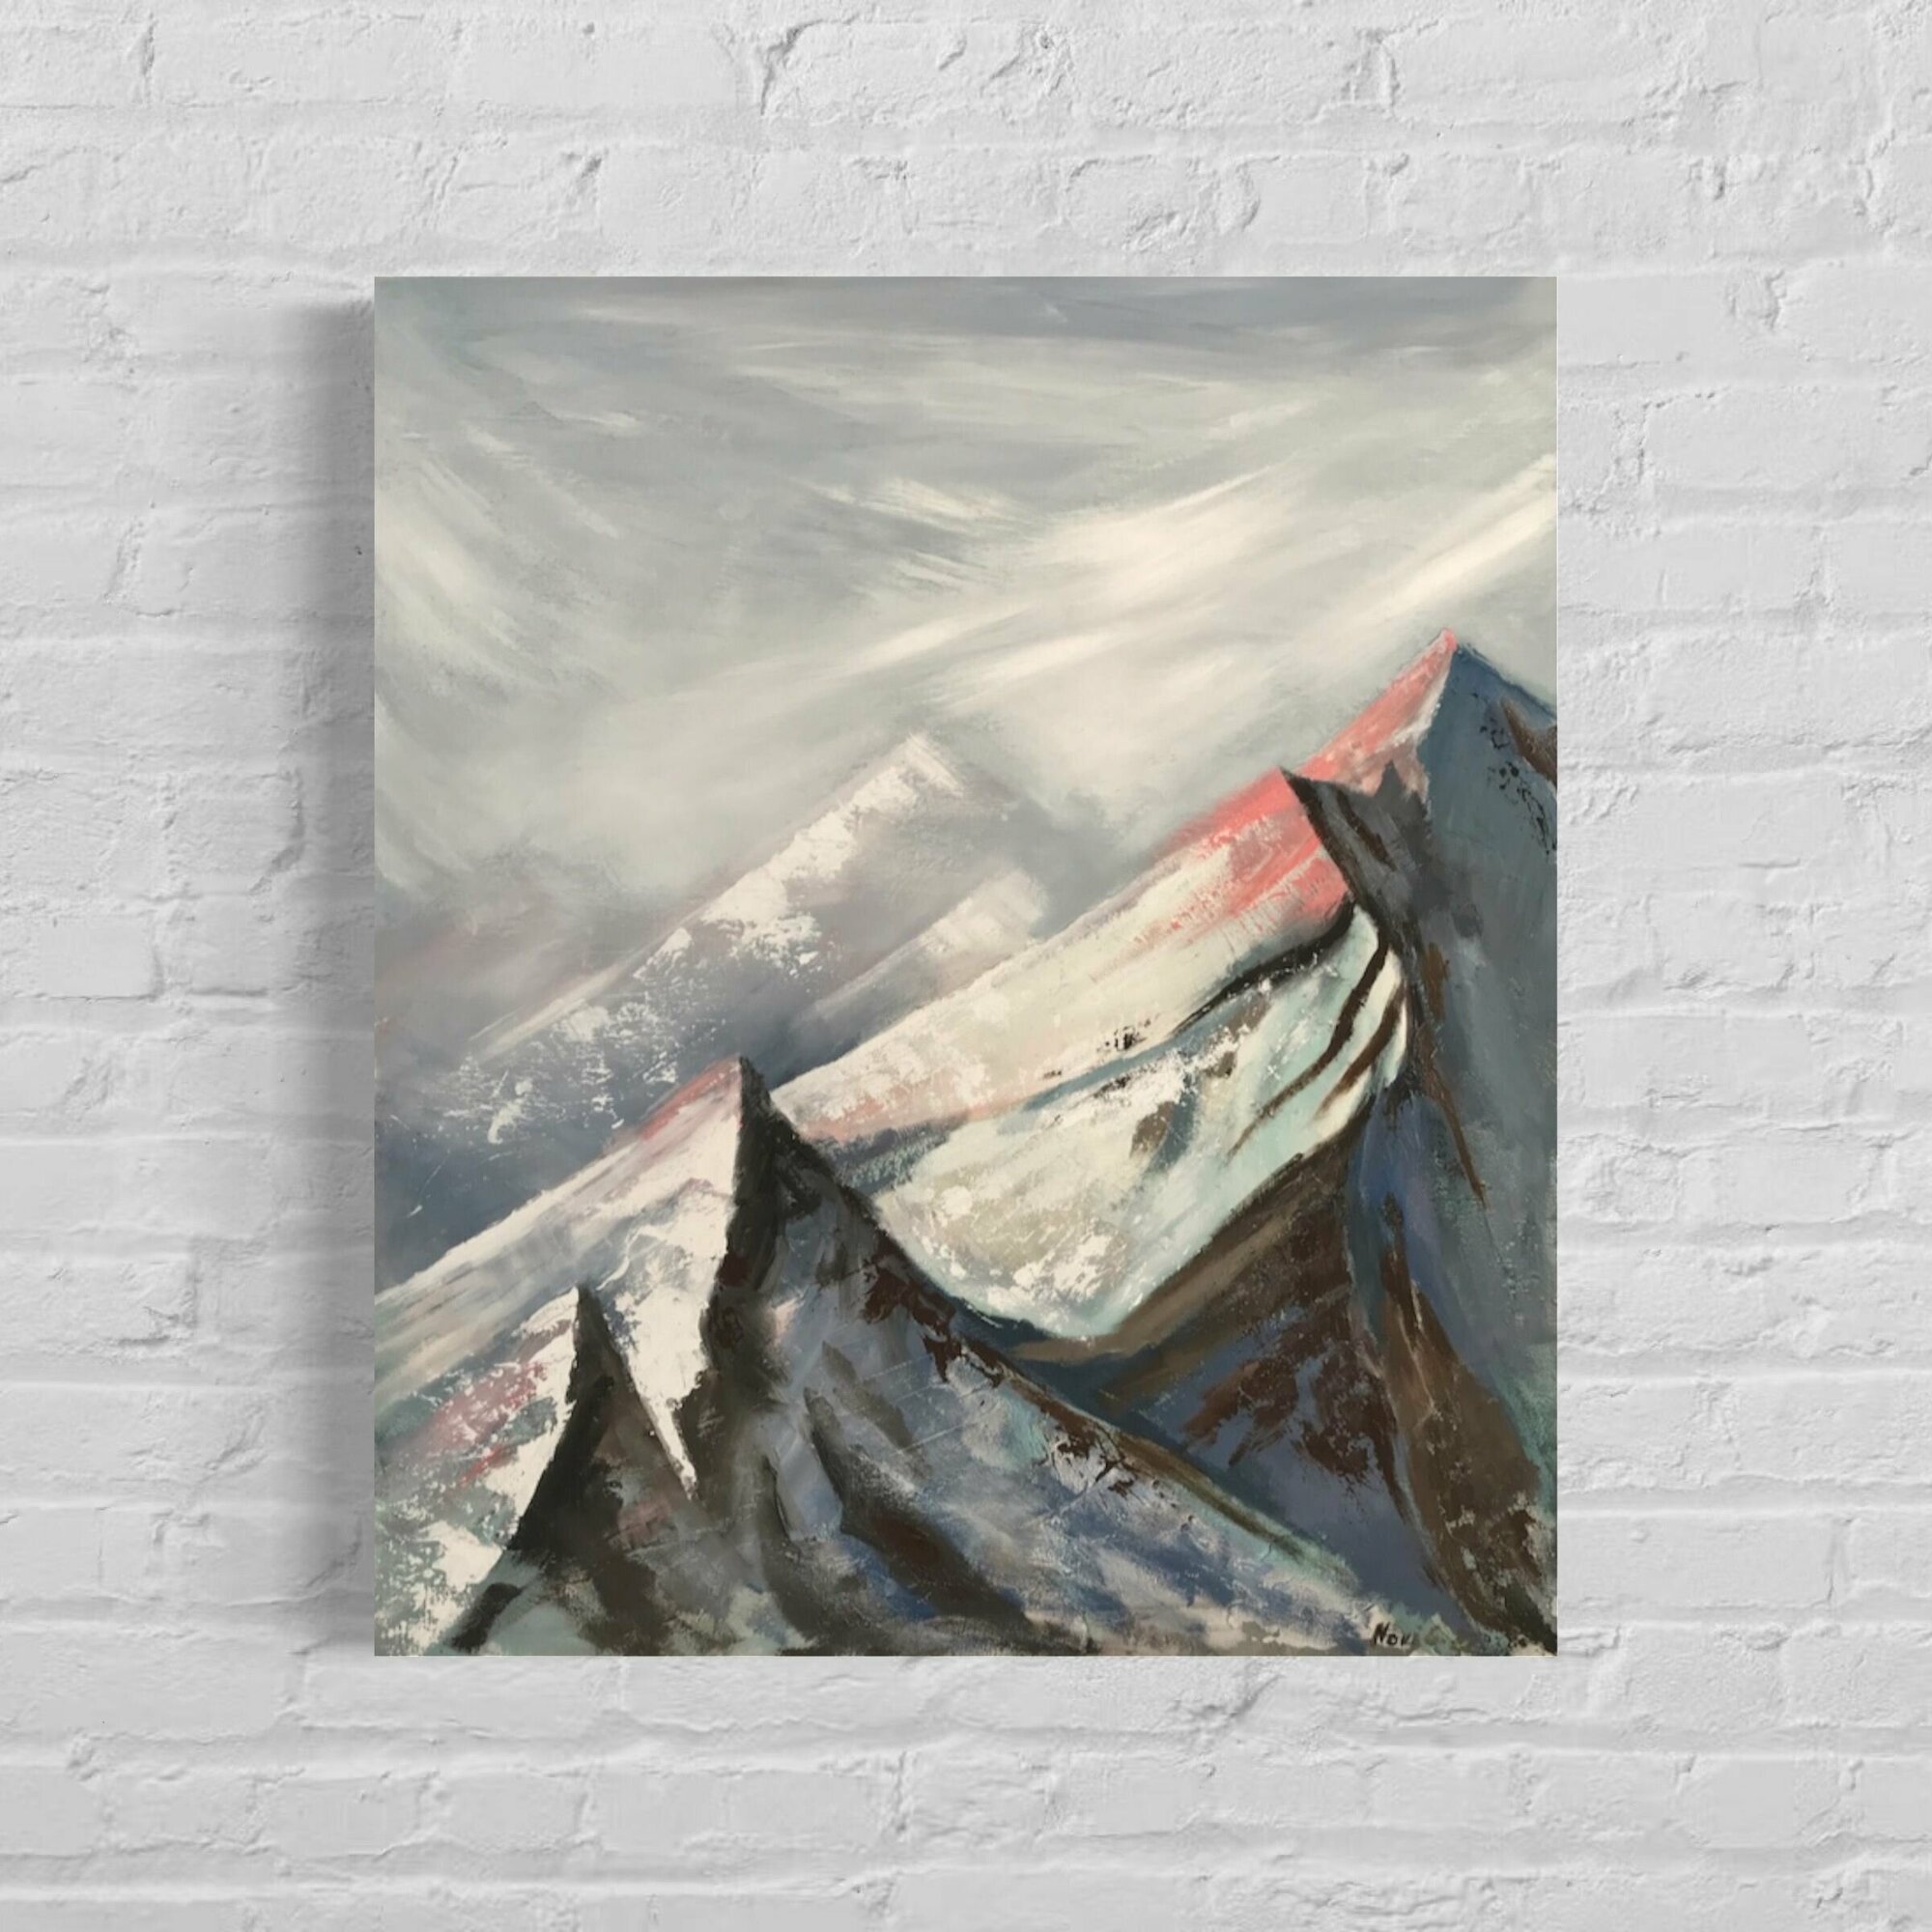 Интерьерная картина маслом на холсте "Горы" ручная работа.60*70 см.